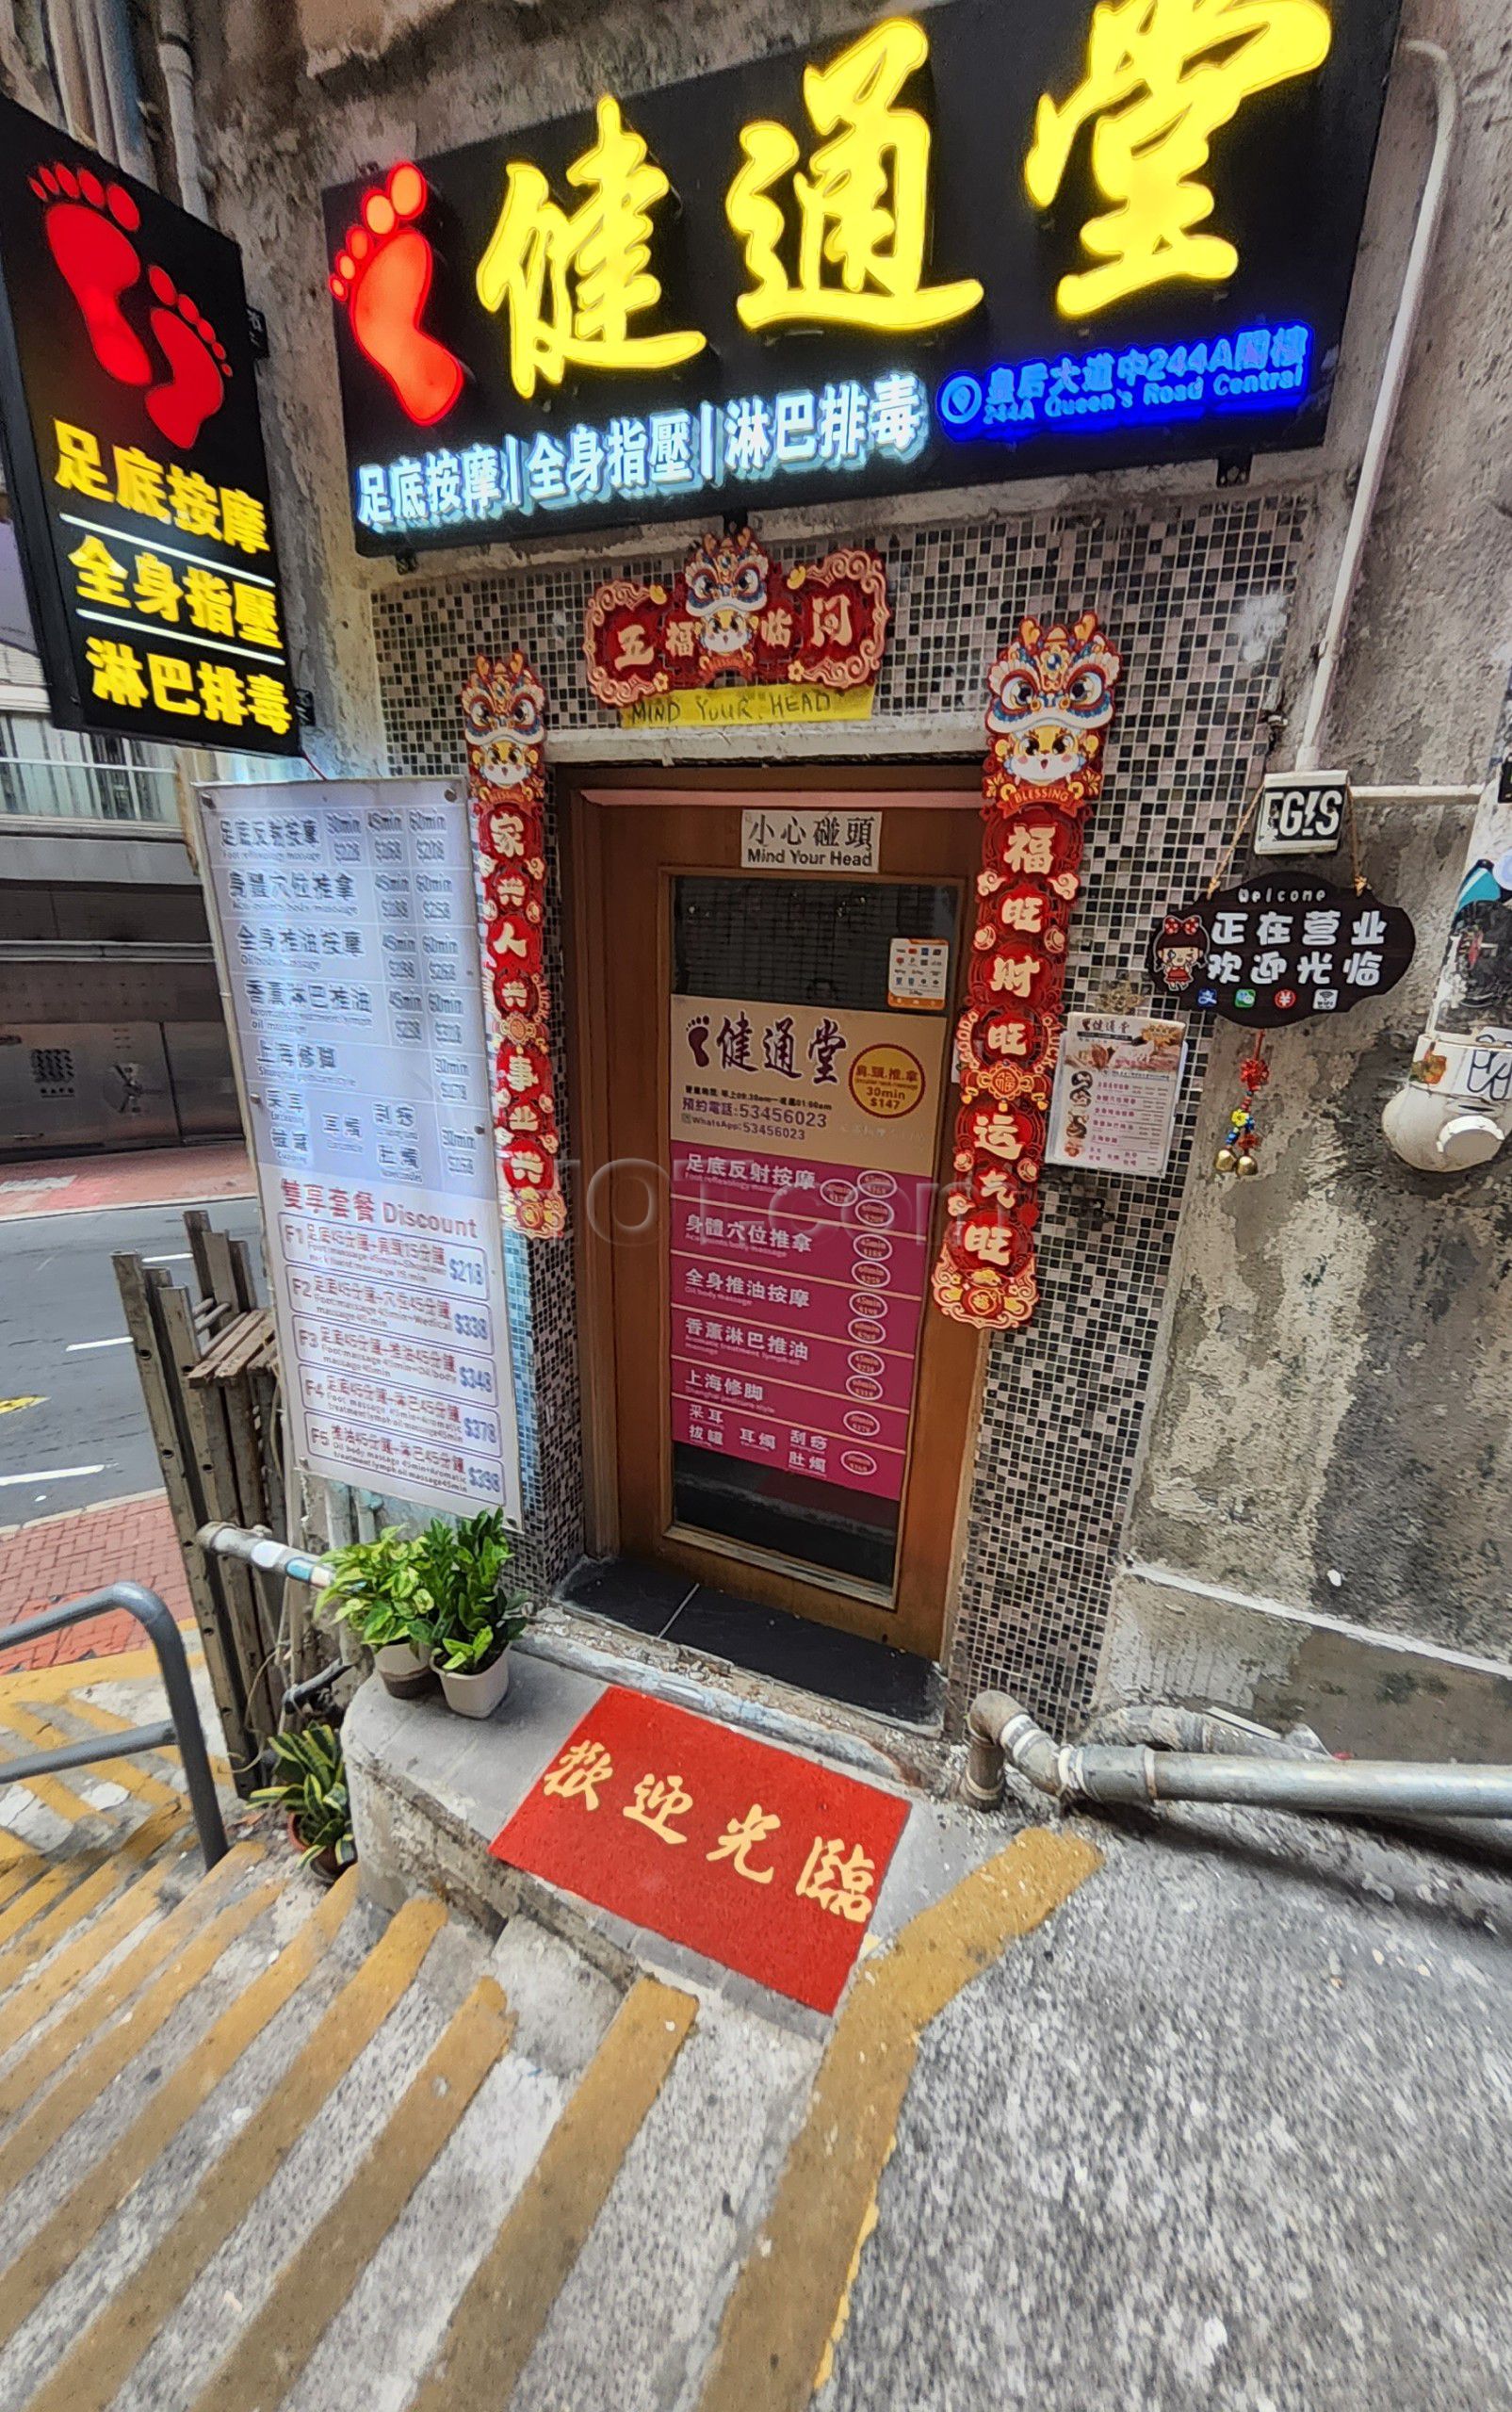 Hong Kong, Hong Kong Foot Massage